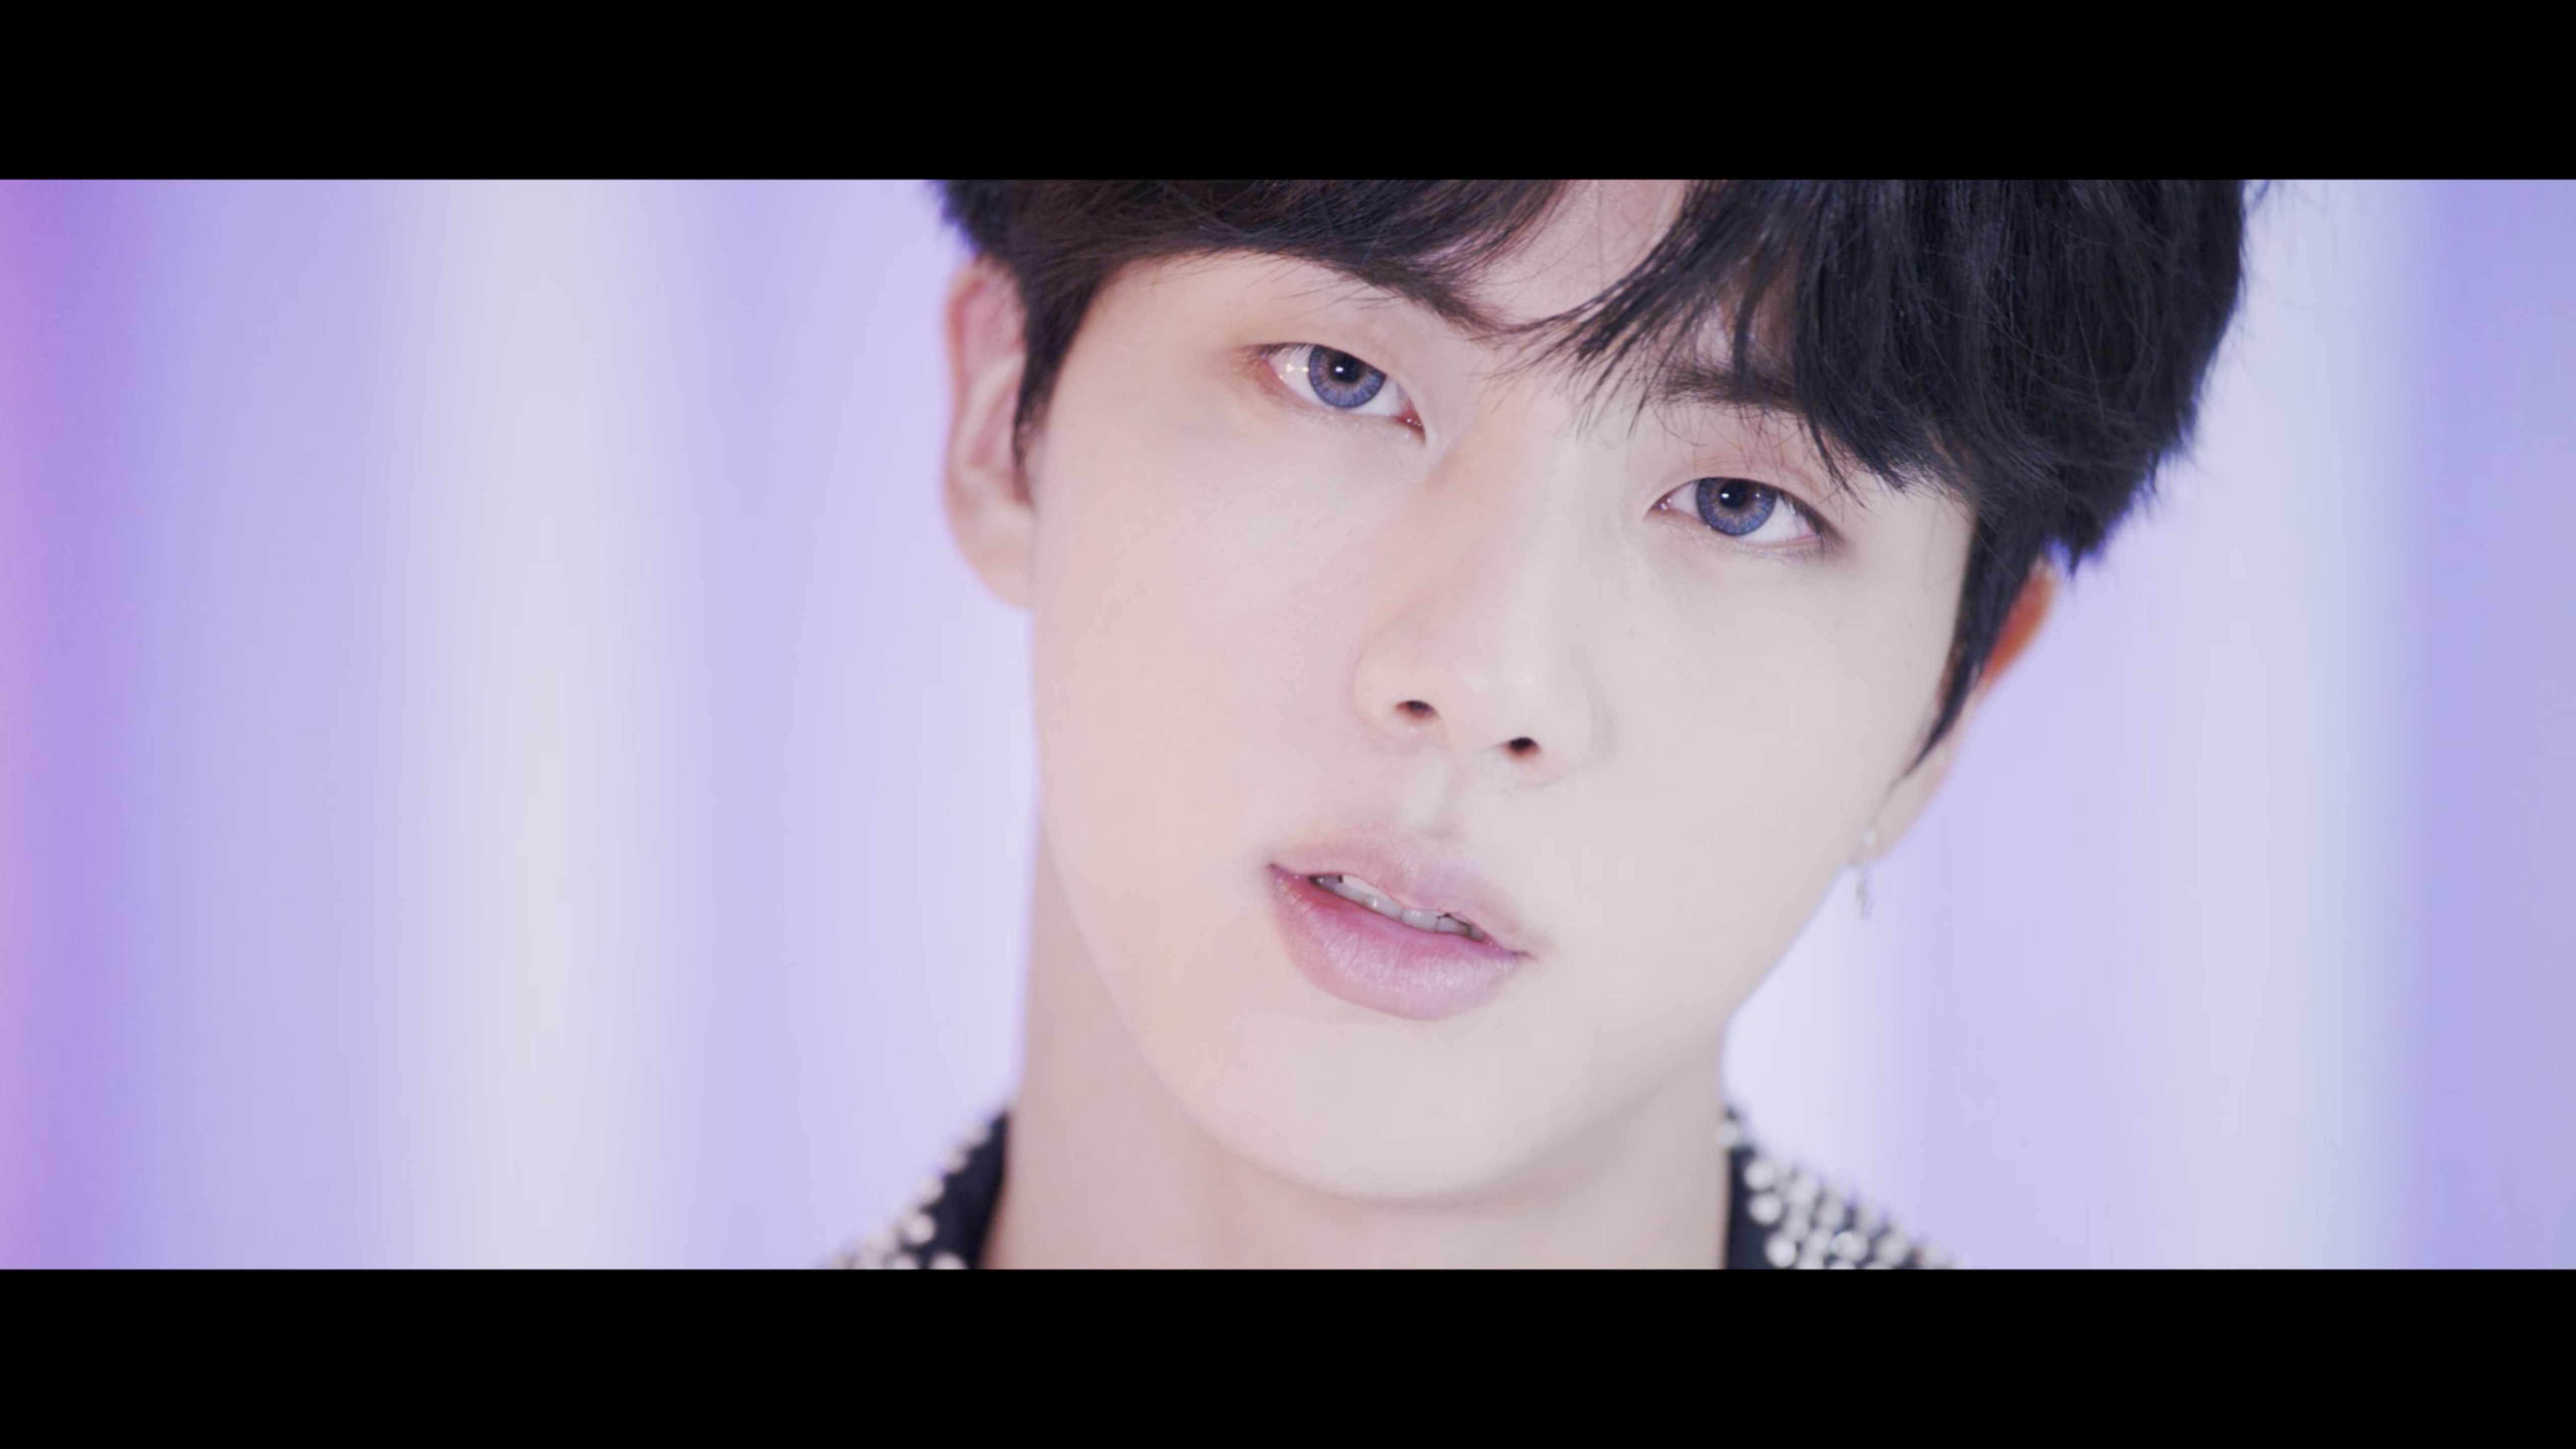 BTS (방탄소년단) 'DNA' Official MV